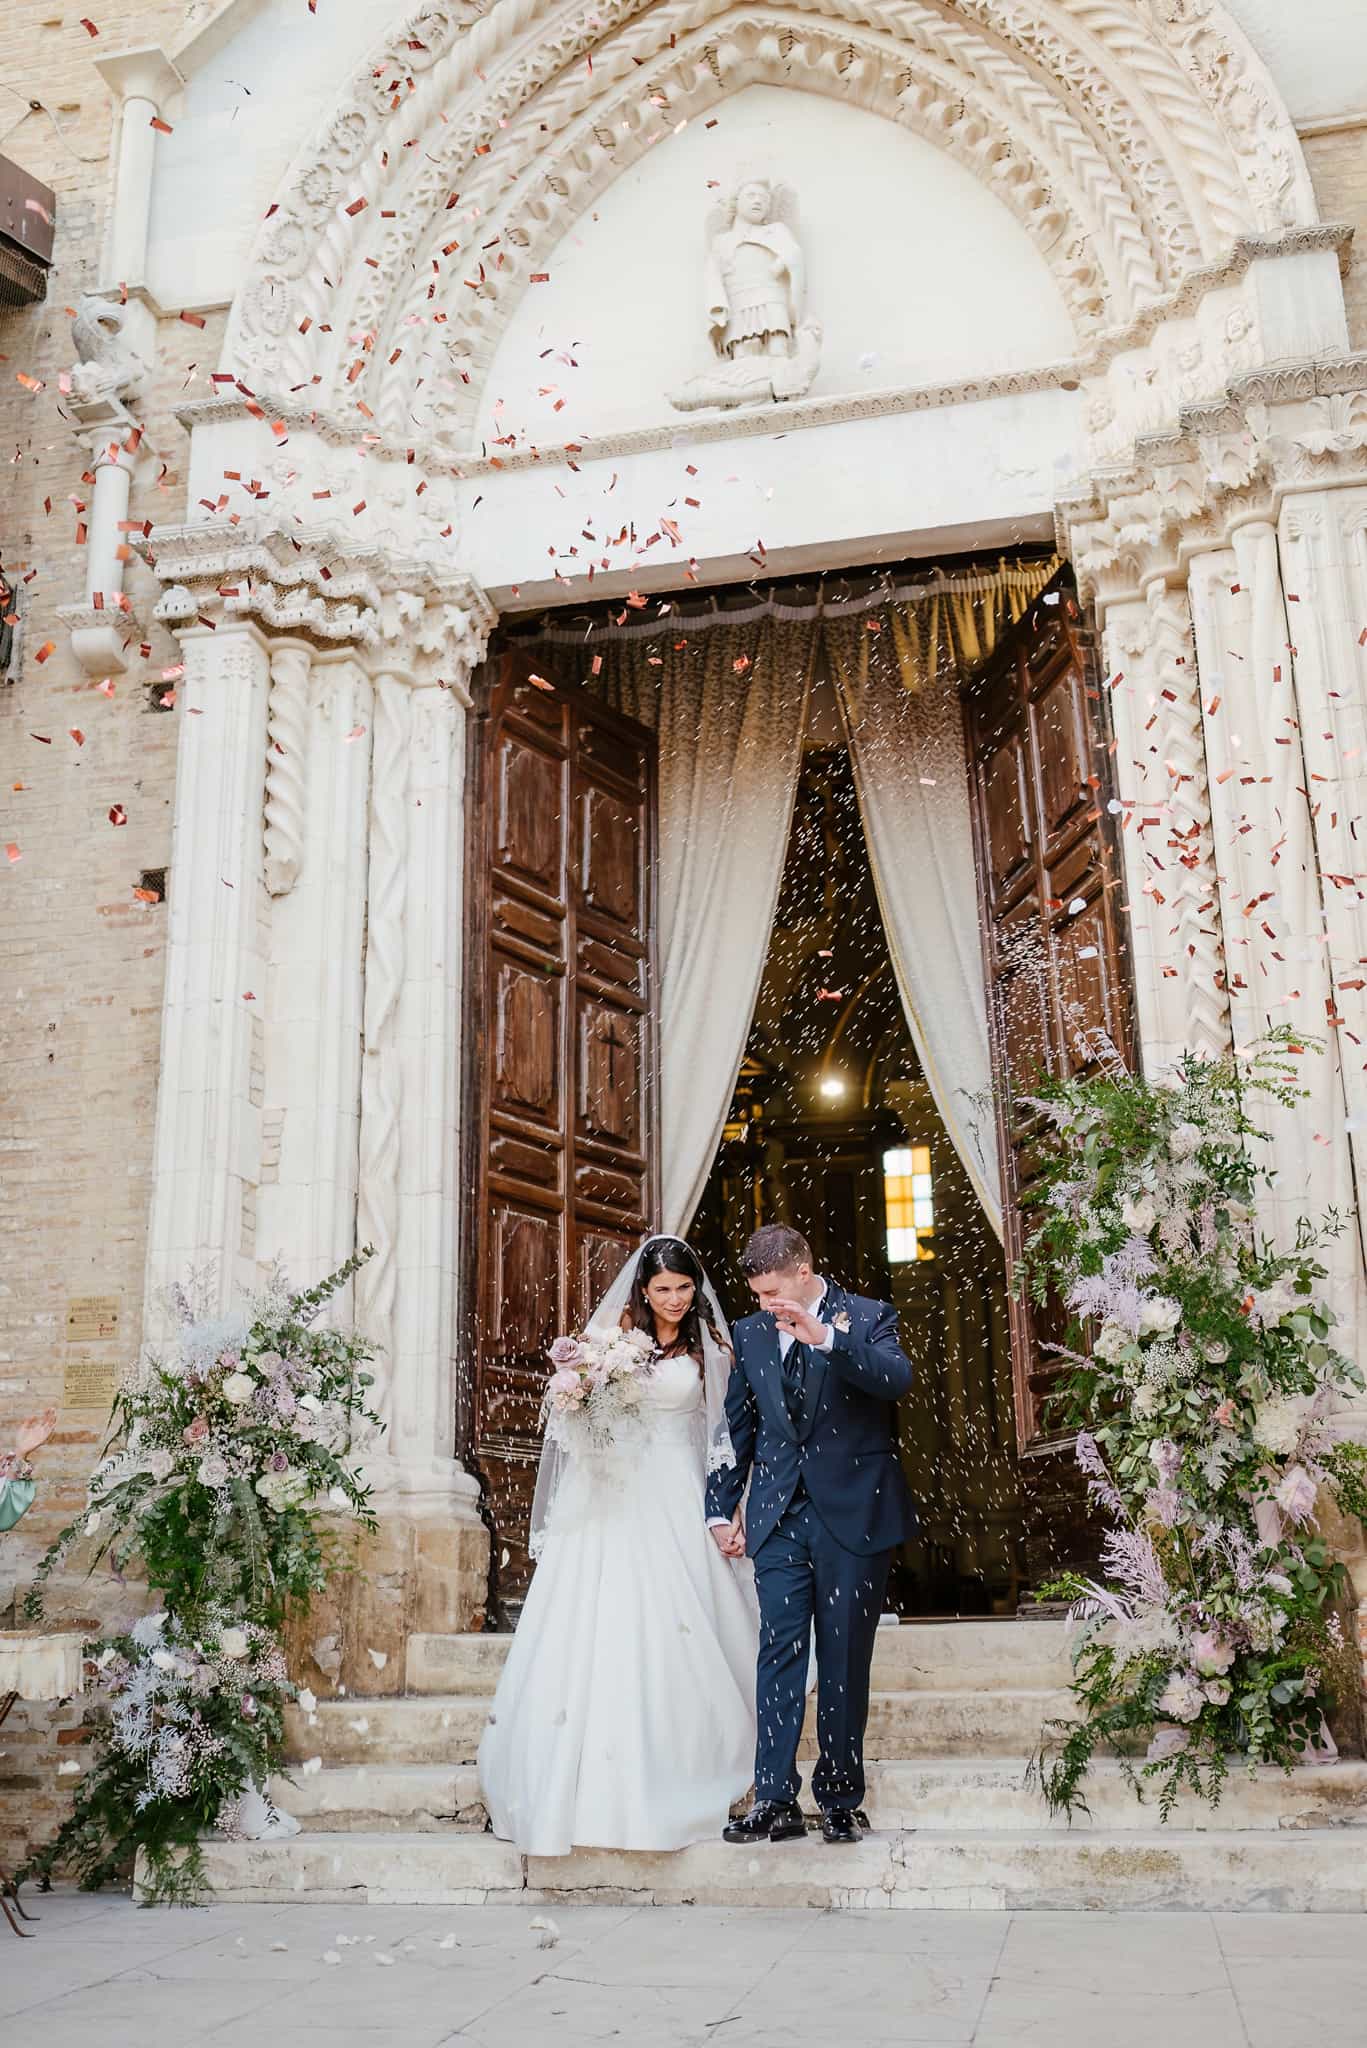 fotografo-matrimonio-abruzzo-sposi-chiesa-cerimonia-lancio-riso-confetti